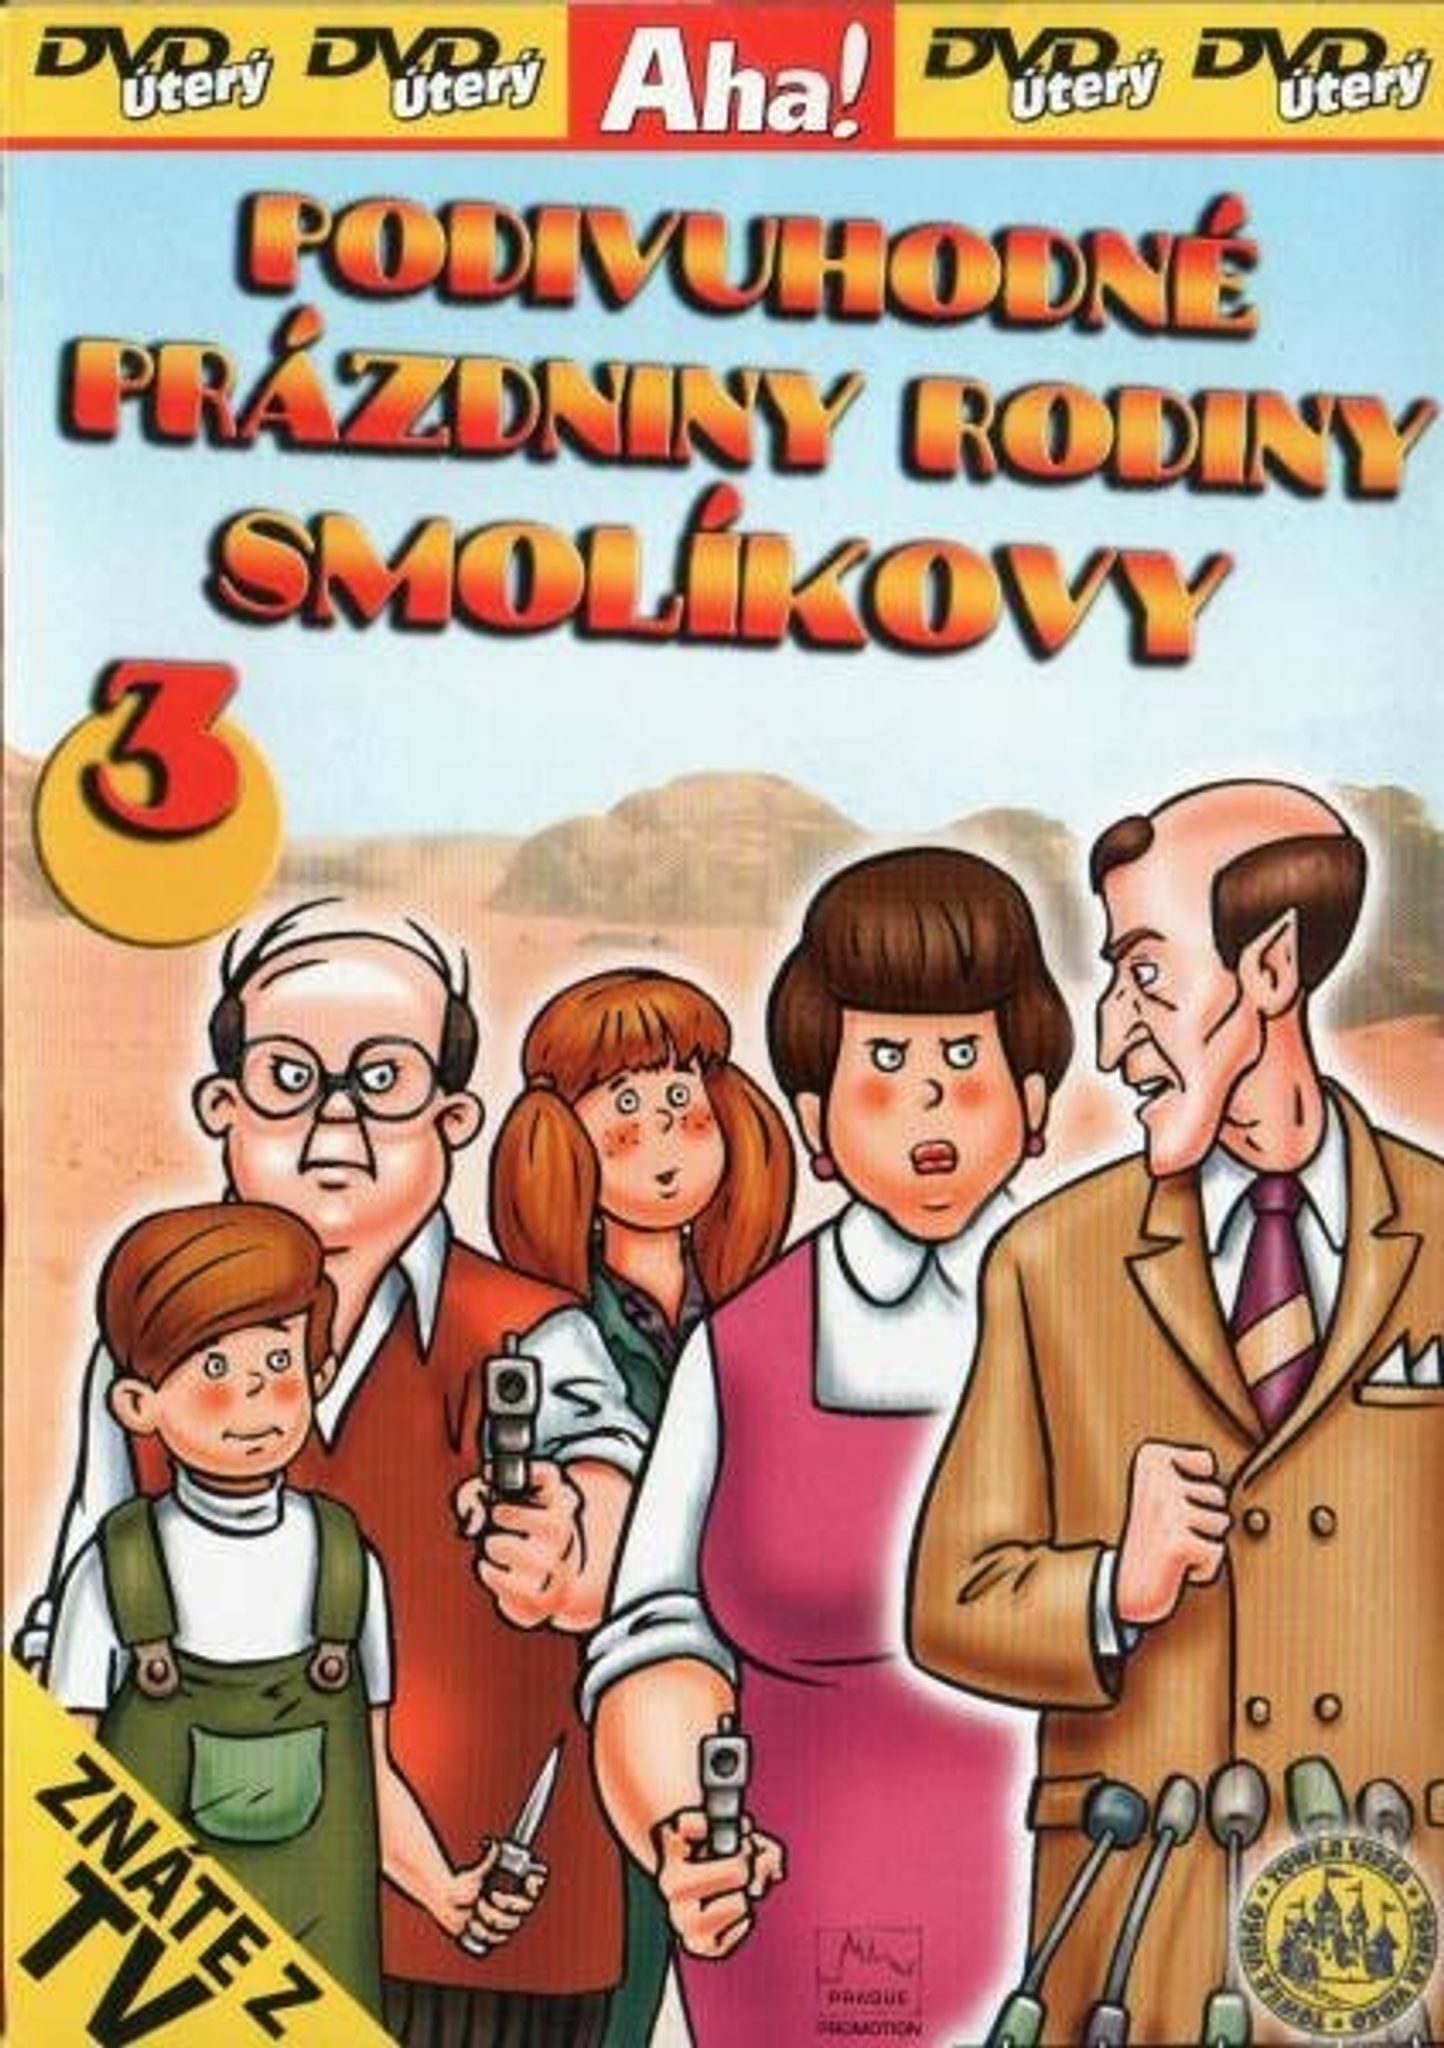 DVD Podivuhodn przdniny rodiny Smolkovy 3 - Kliknutm na obrzek zavete